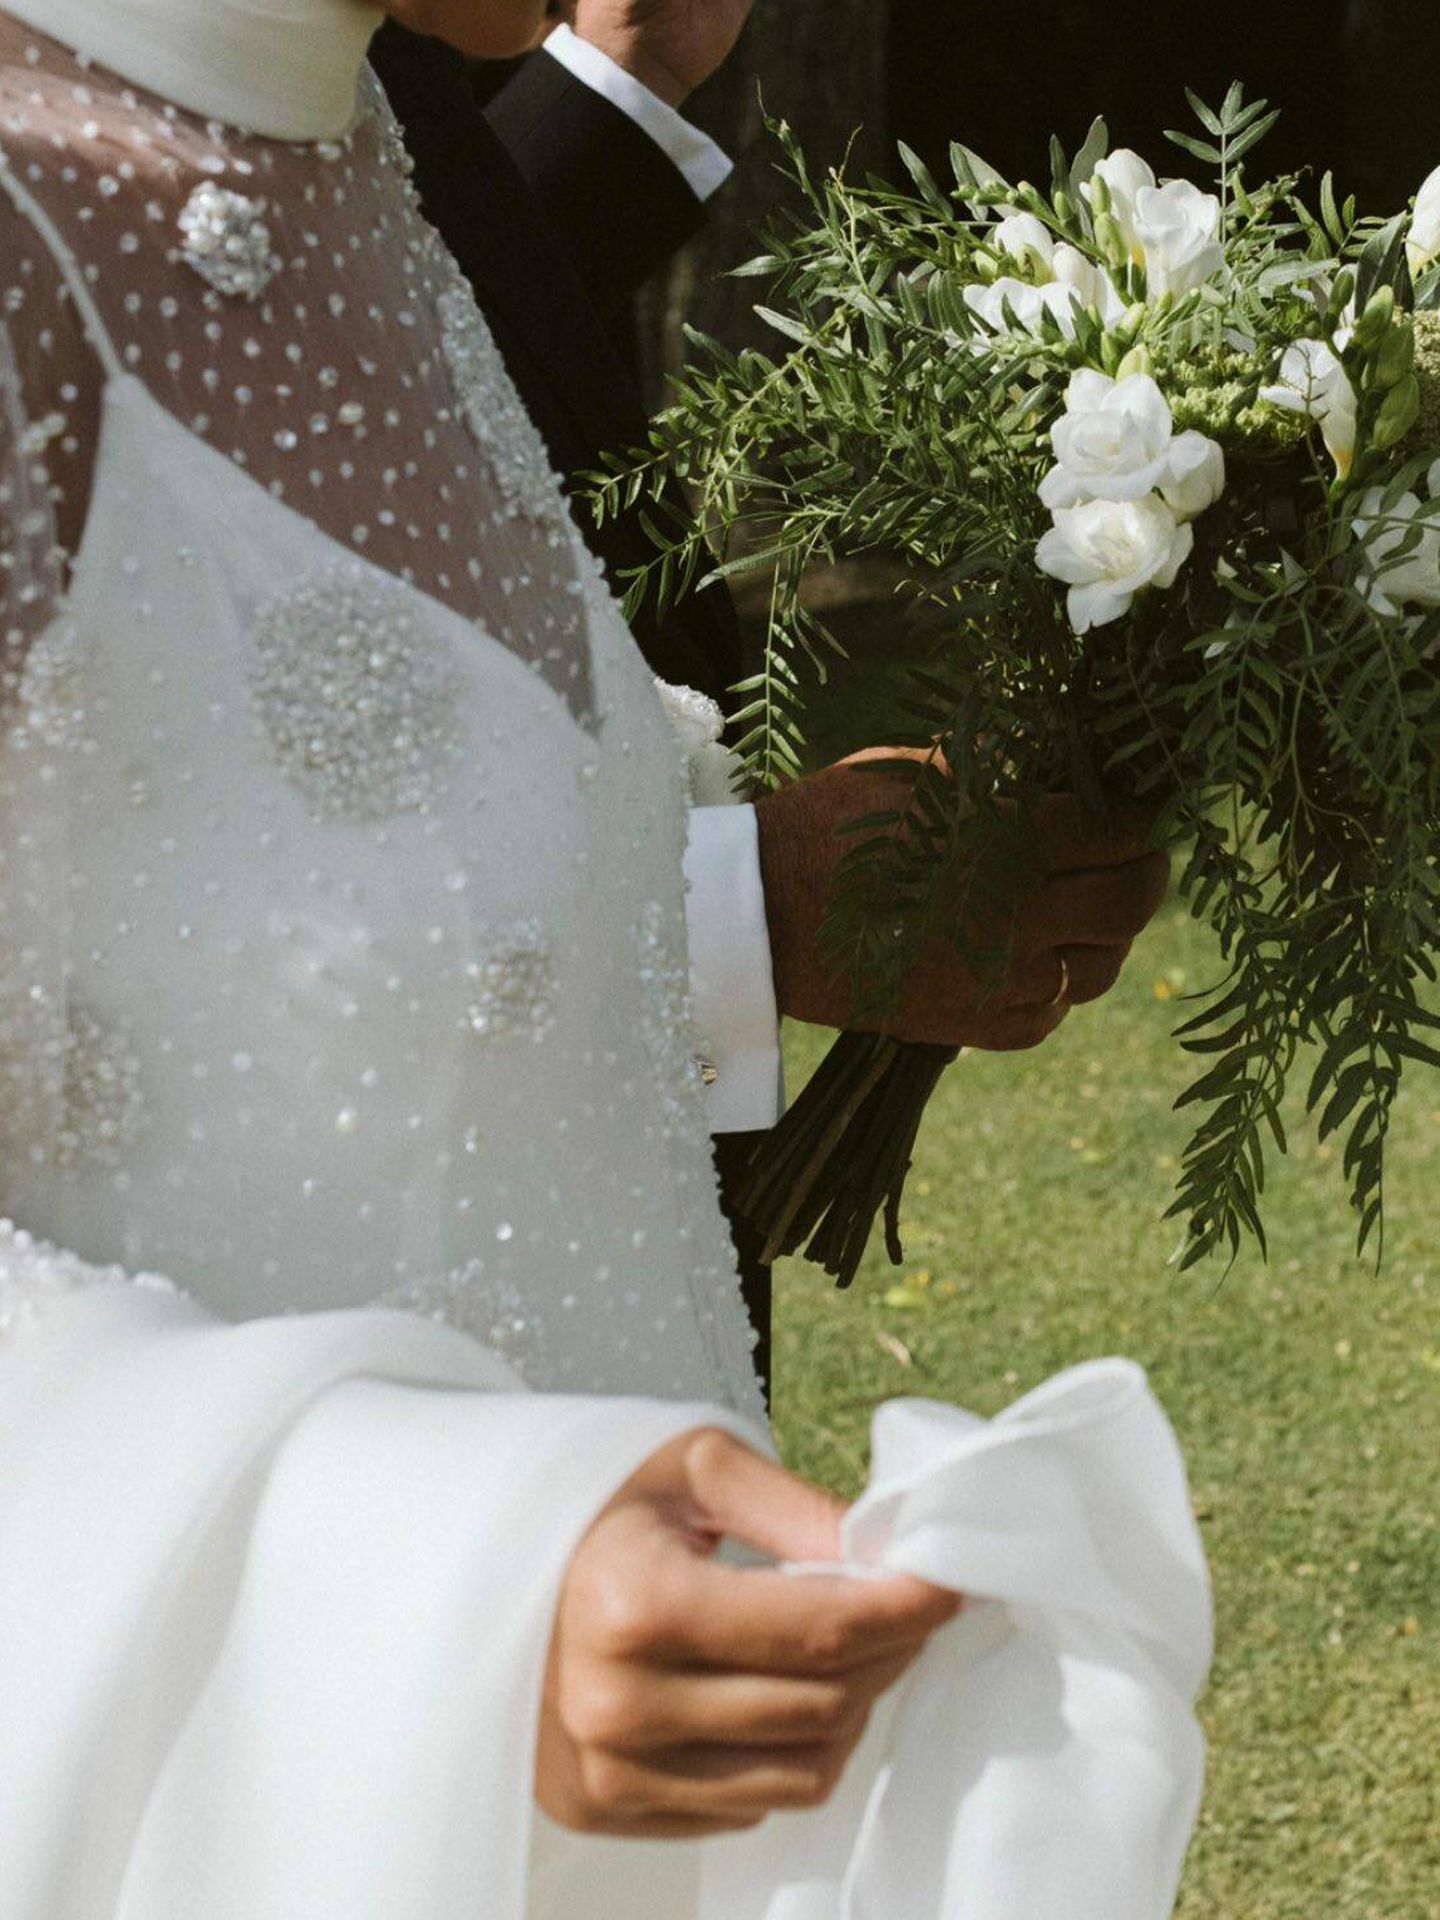 Detalle del vestido de novia de Casilda Aguilera. (Instagram/@casildaaguilera)